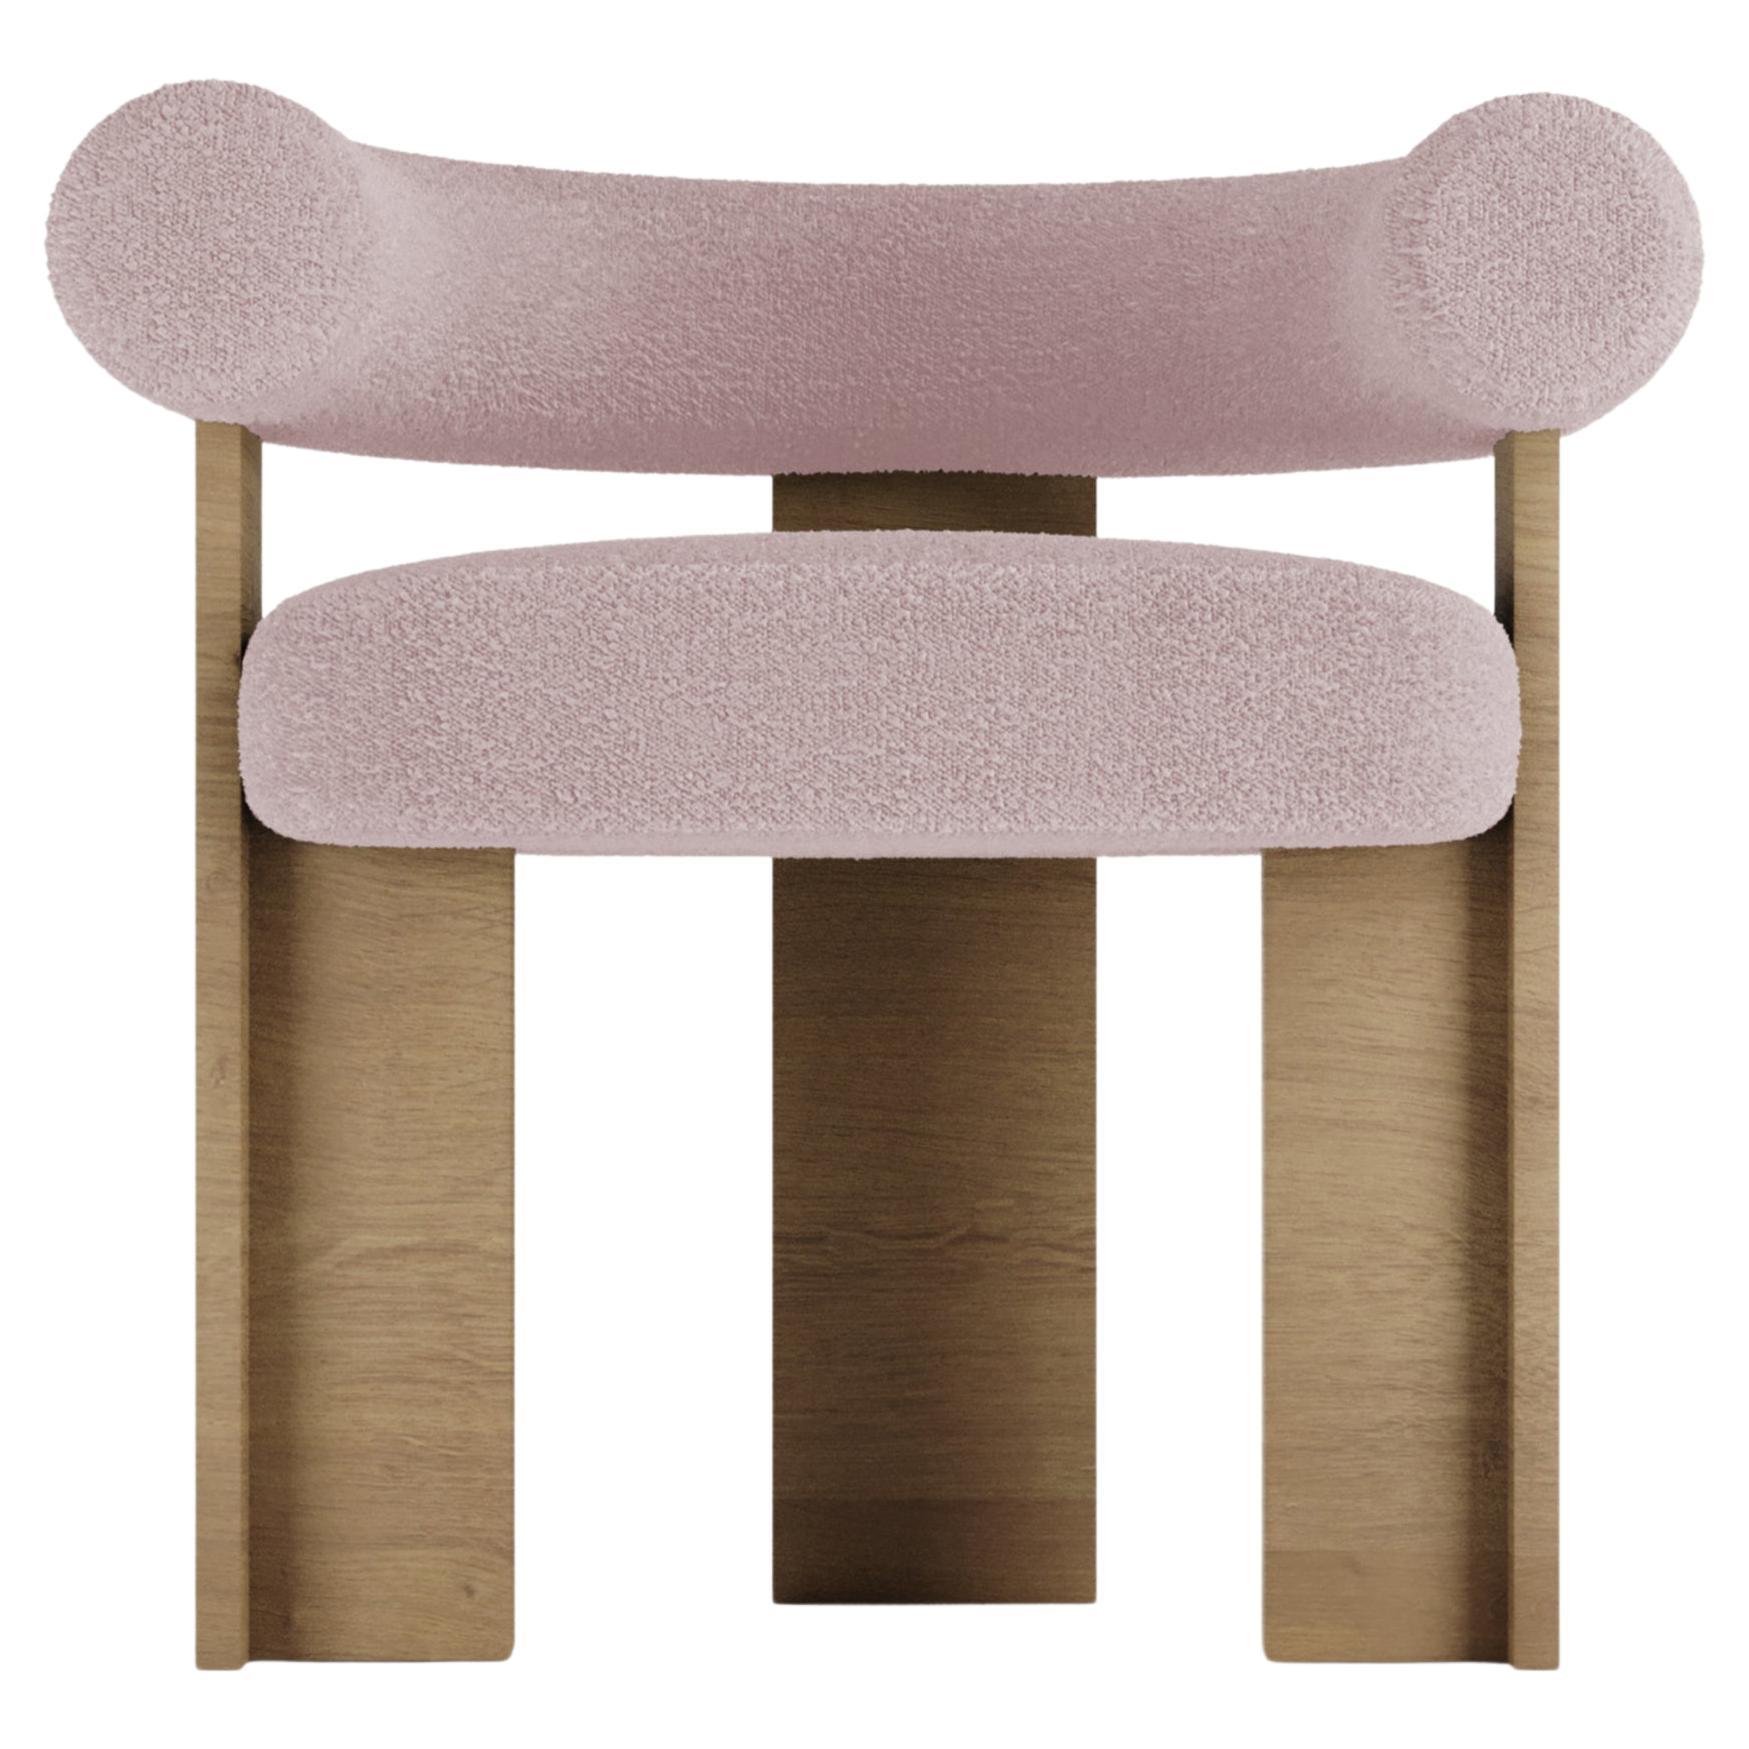 The Moderns Modernity Cassette Chair en Oak Oak et Boucle Pink by Alter Ego